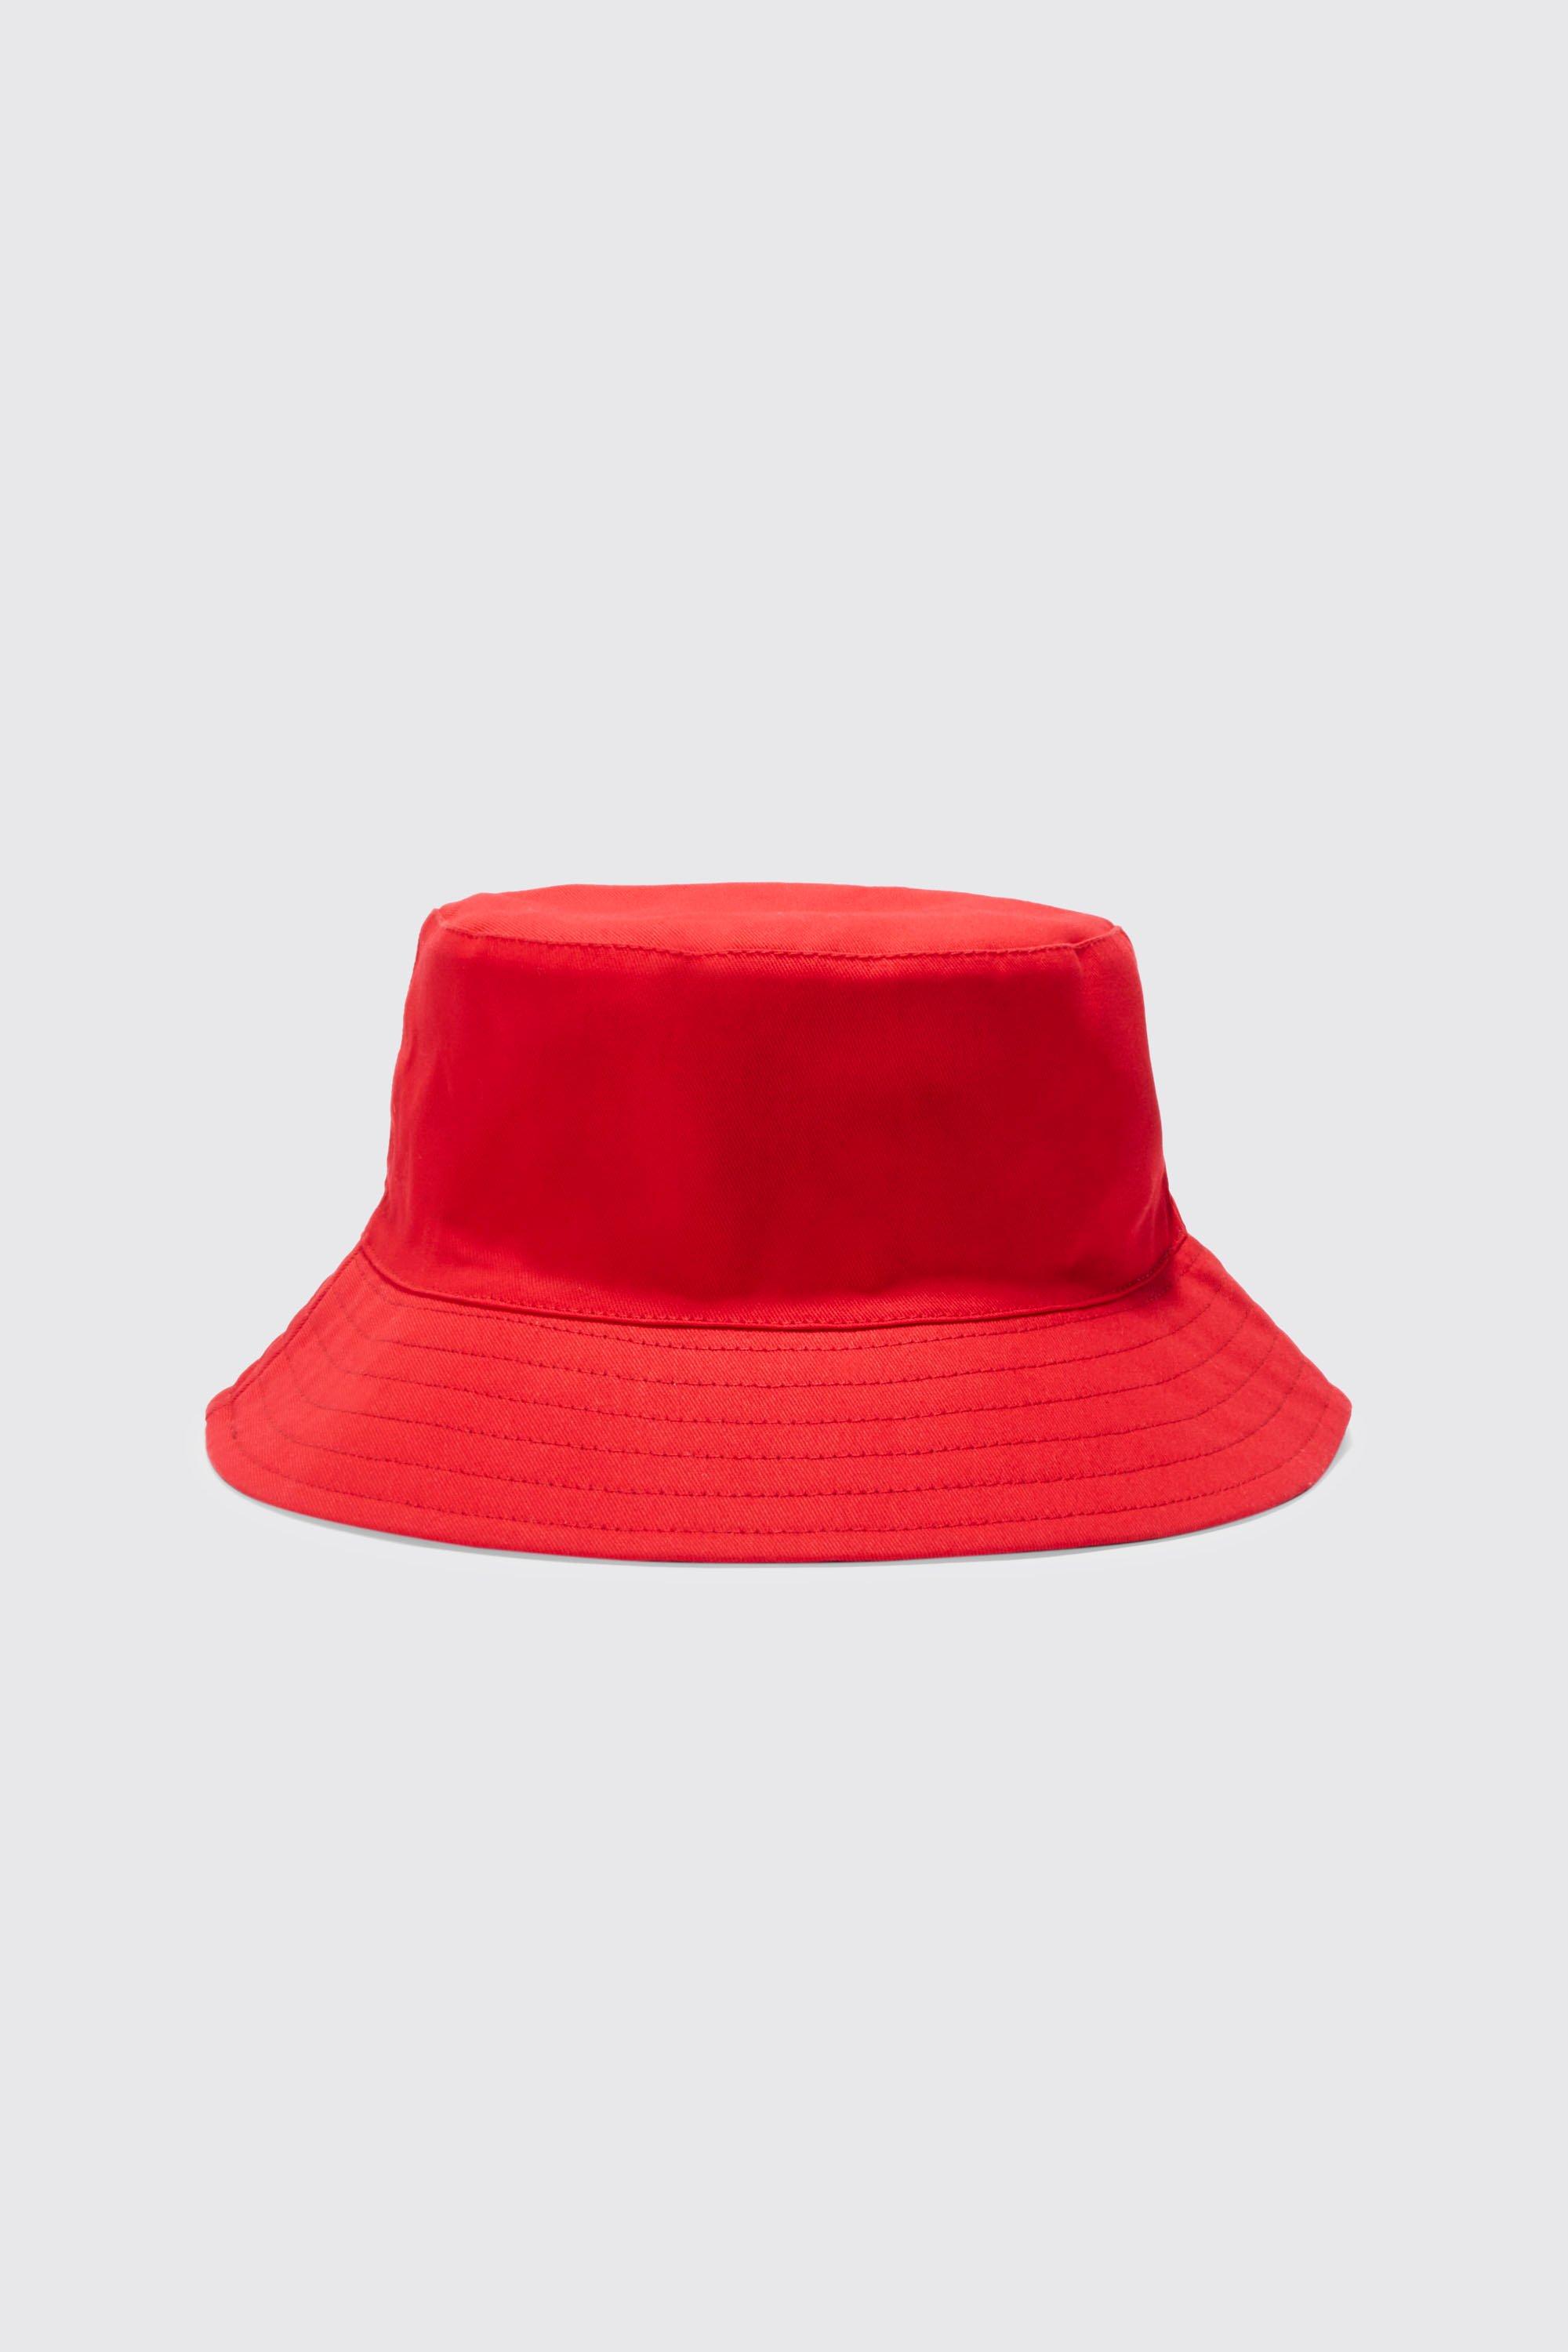 men's reversible bucket hat - red - s/m, red